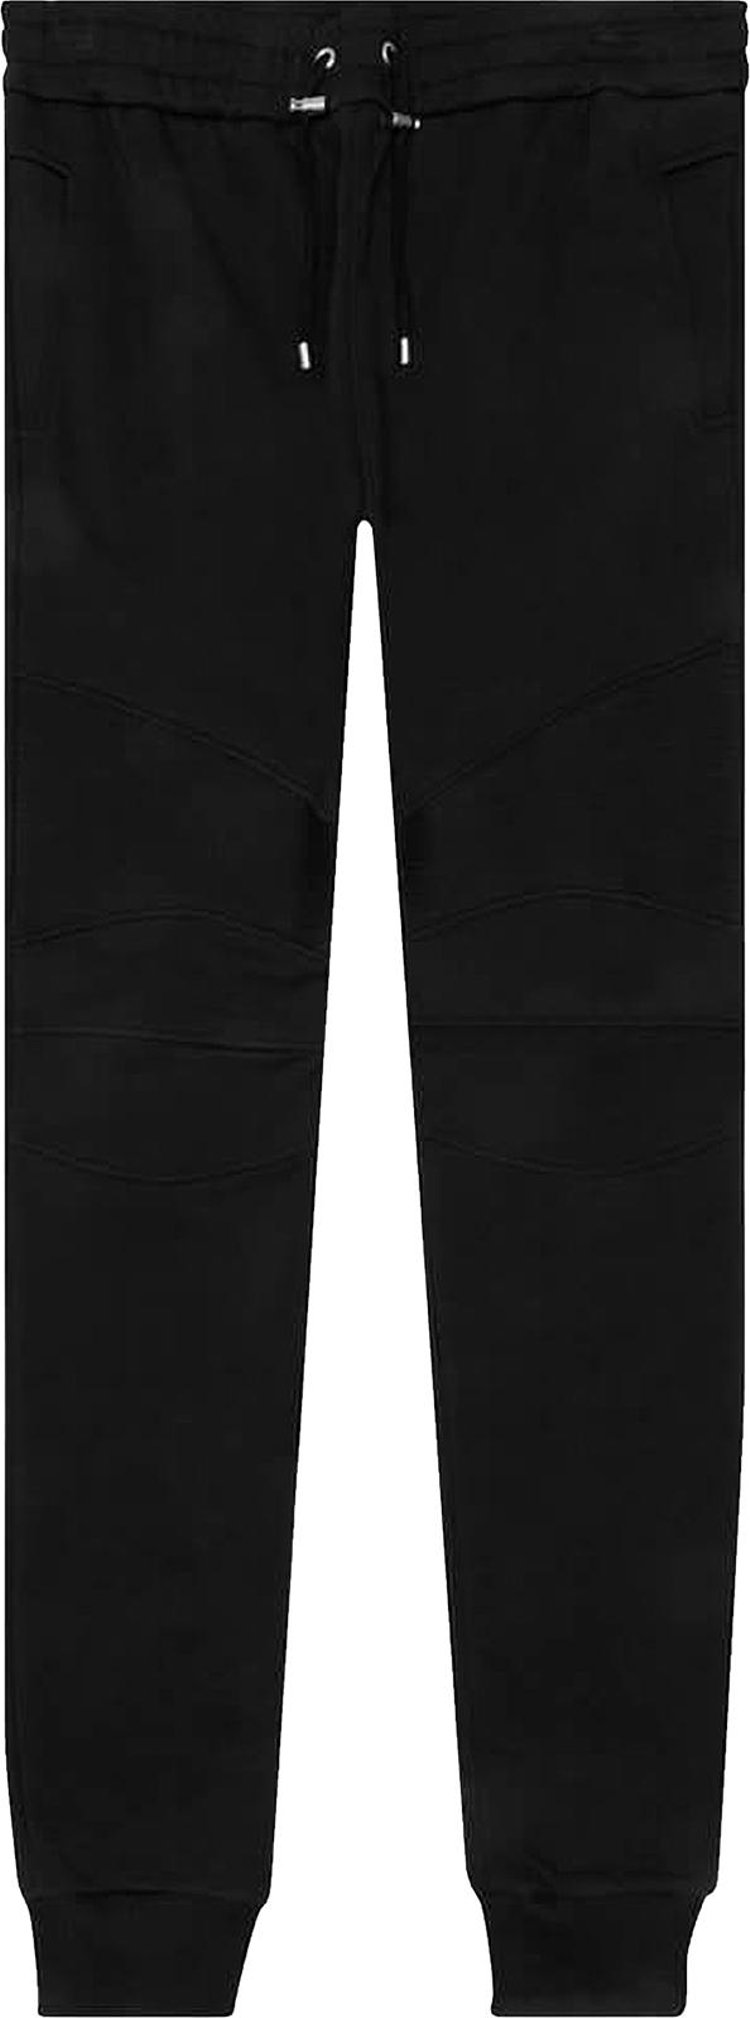 Buy Balmain Flock Sweatpants 'Noir/Blanc' - XH1OB000BB04 EAB NOIR | GOAT